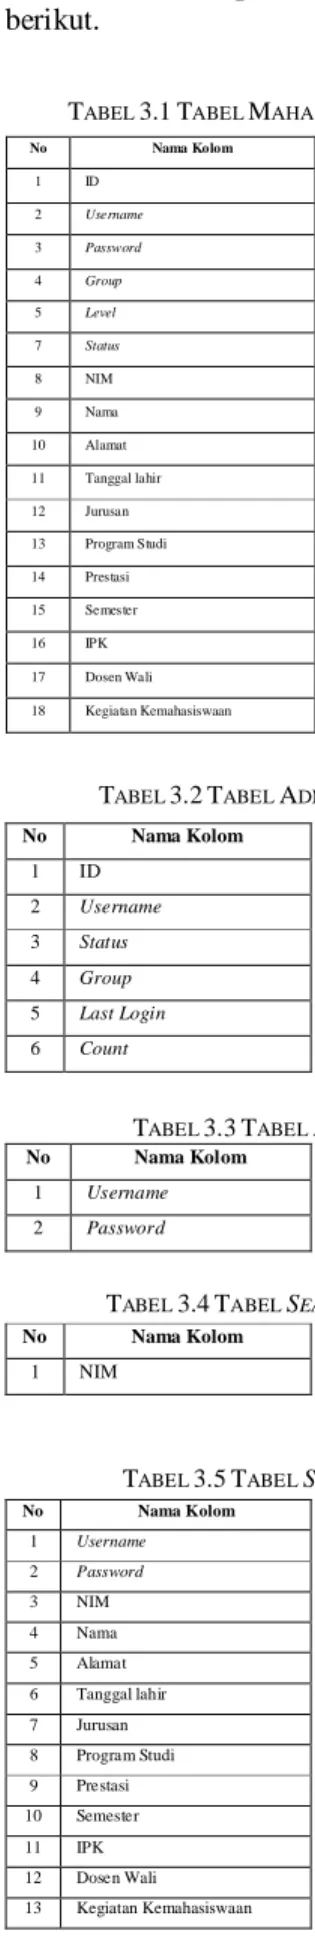 Tabel  3.1,  Tabel  3.2,  Tabel  3.3,  Tabel  3.4,  Tabel  3.5,  Tabel  3.6  dan  Tabel  3.7  masih  merupakan  suatu  bentuk  basis  data  yang  tidak  normal